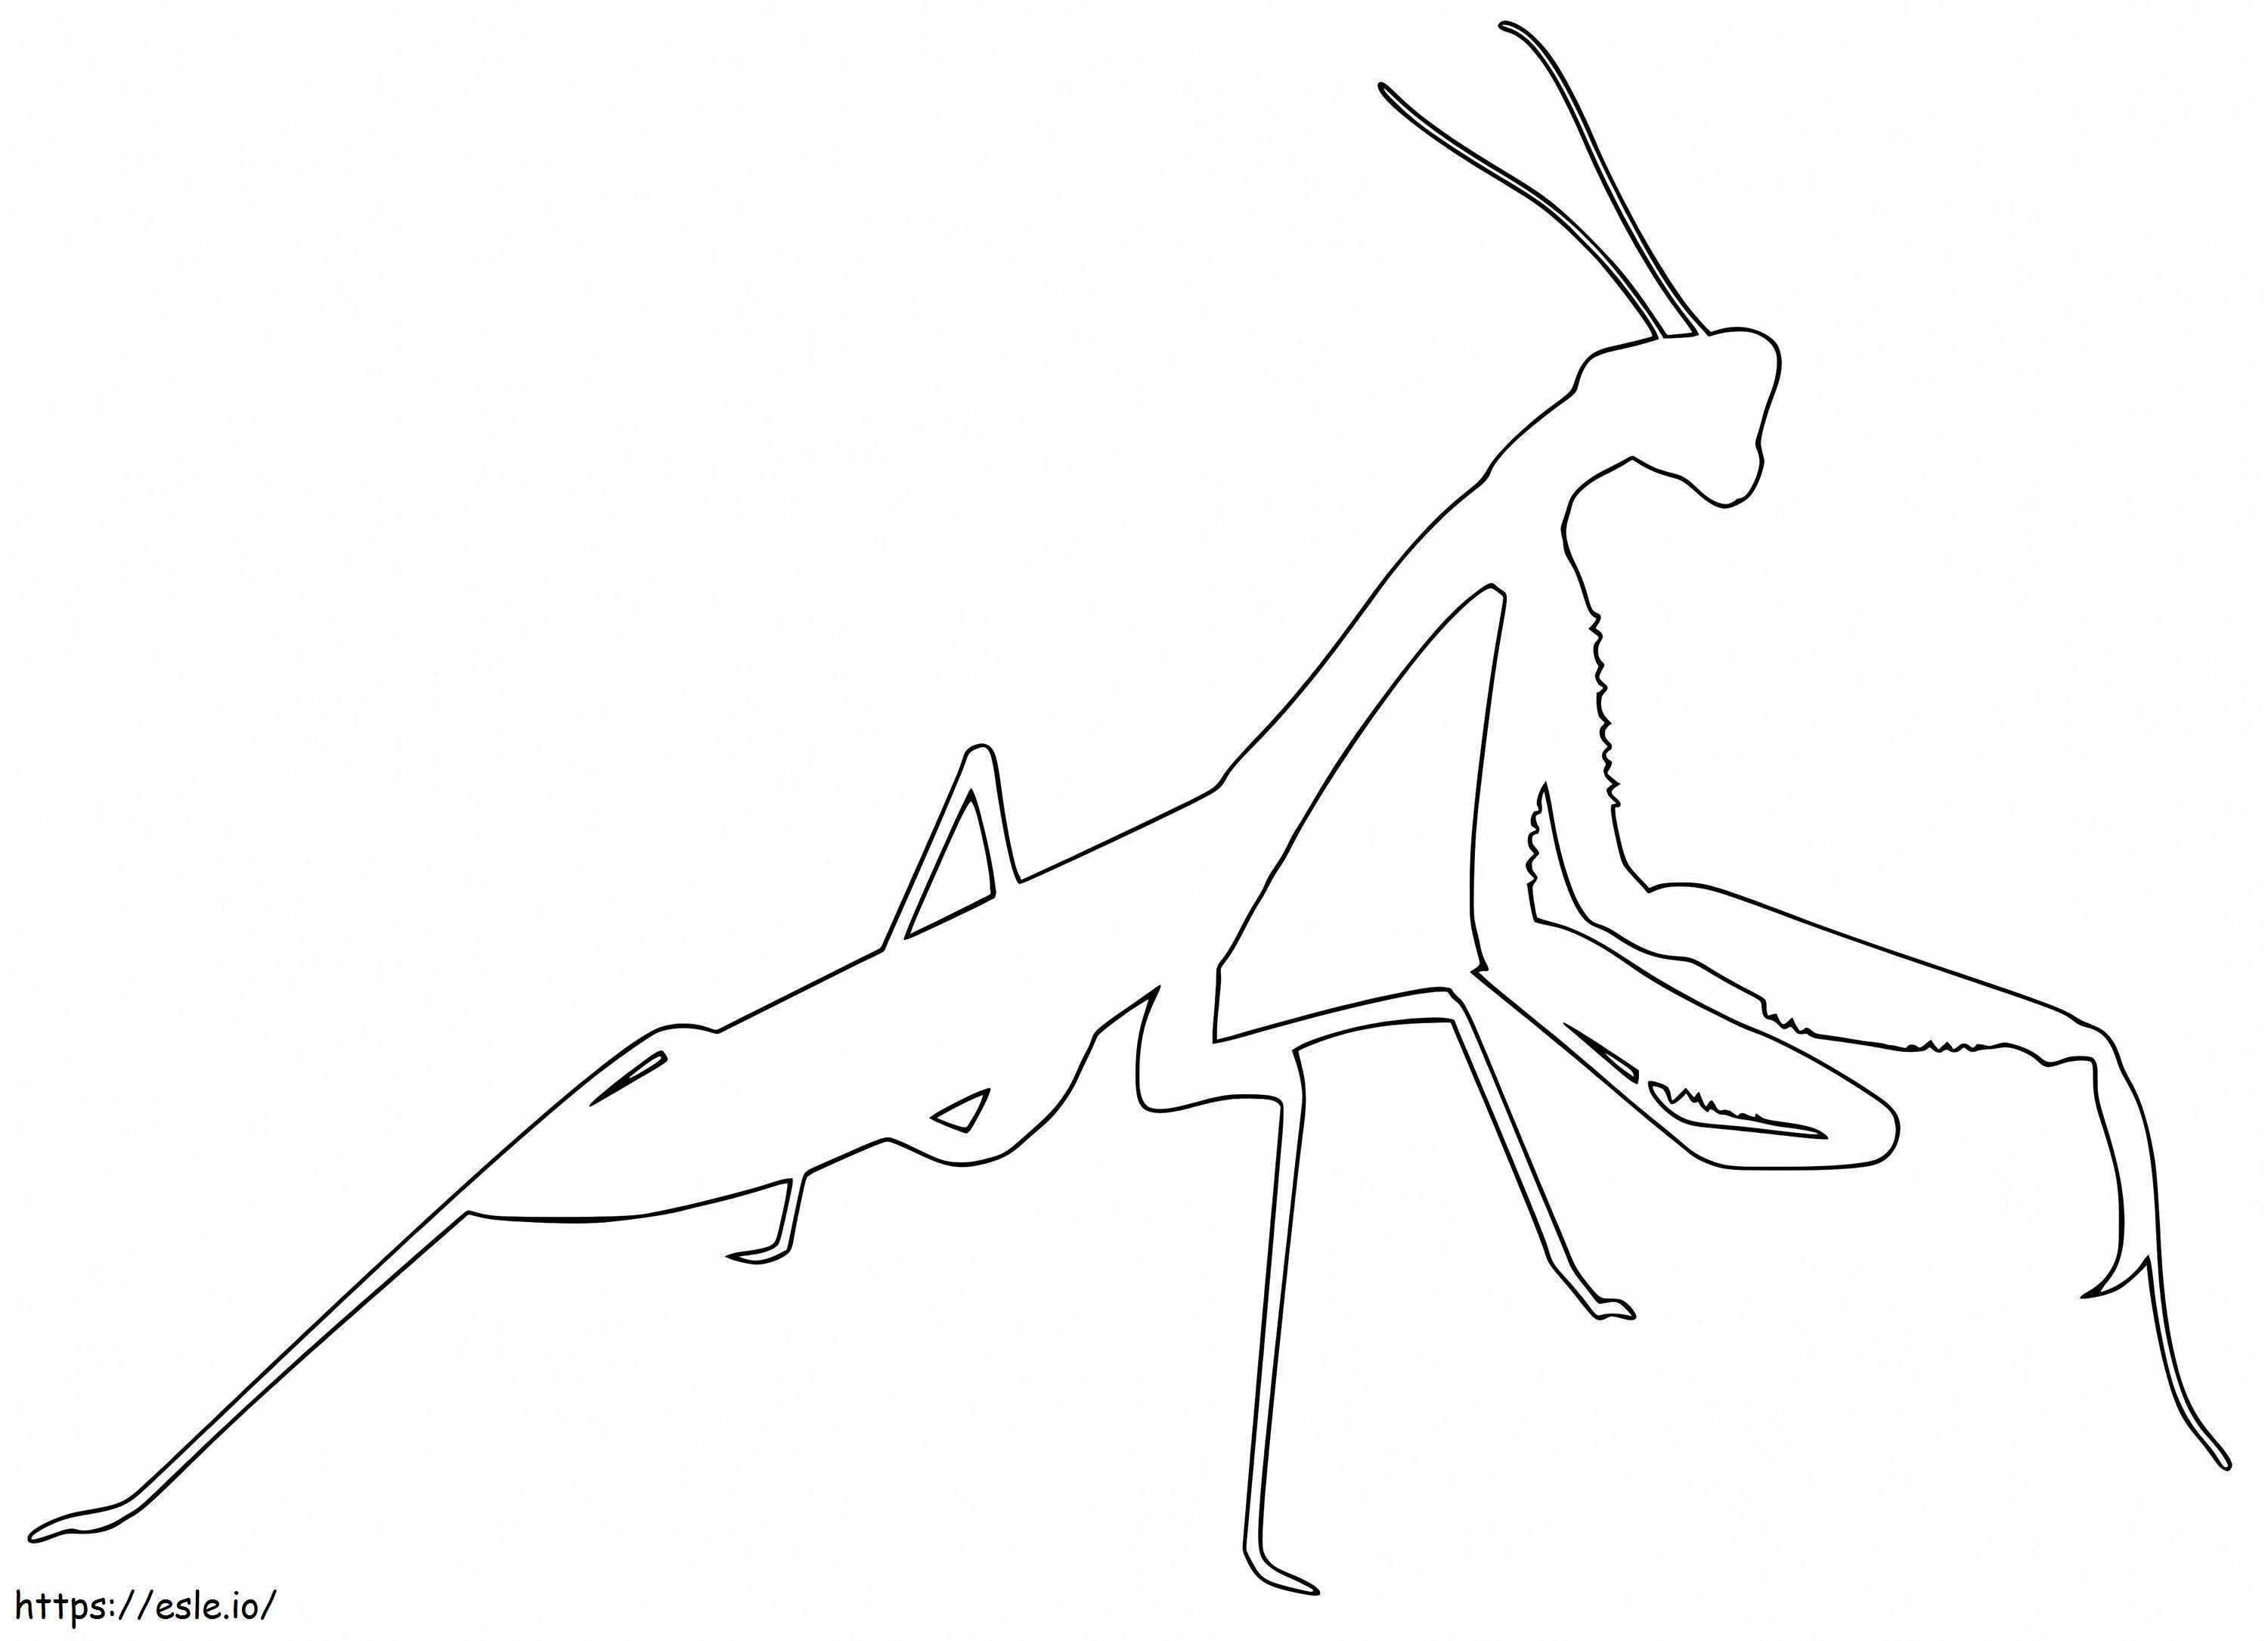 Contur de mantis rugător de colorat